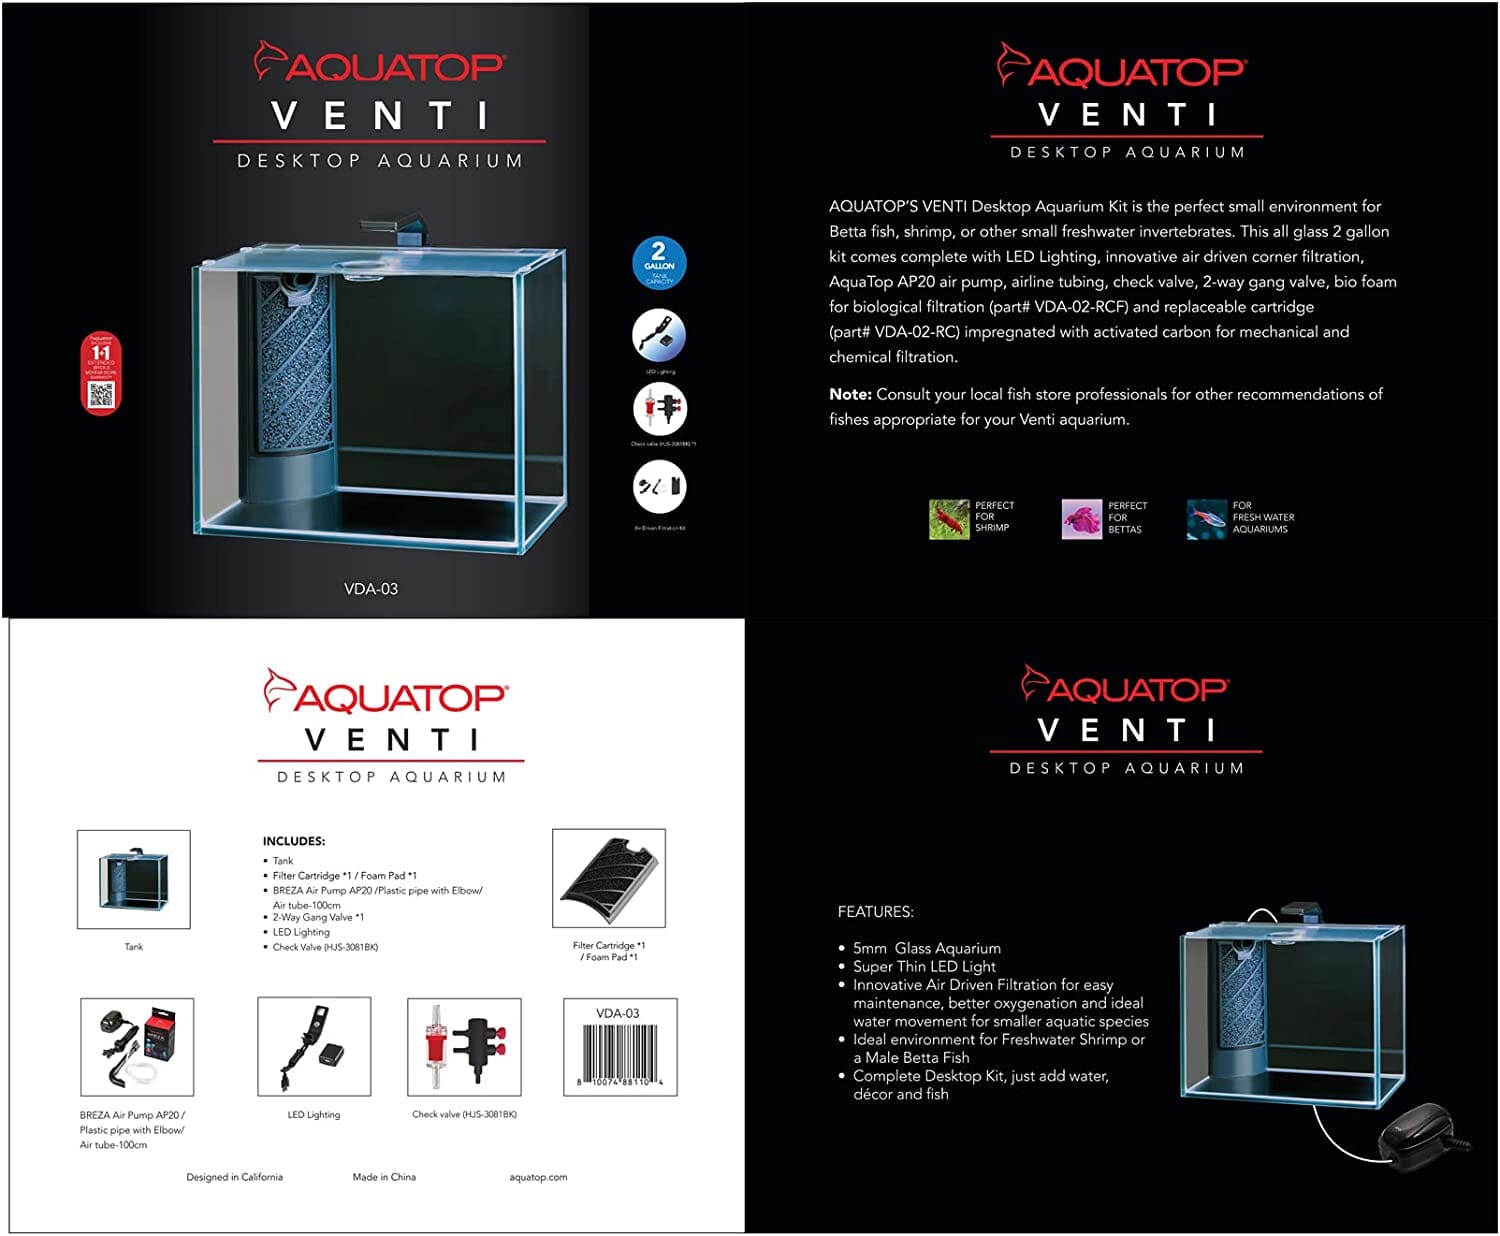 Aquatop Venti Professional Showcase Desktop Aquarium - 2 Gal  